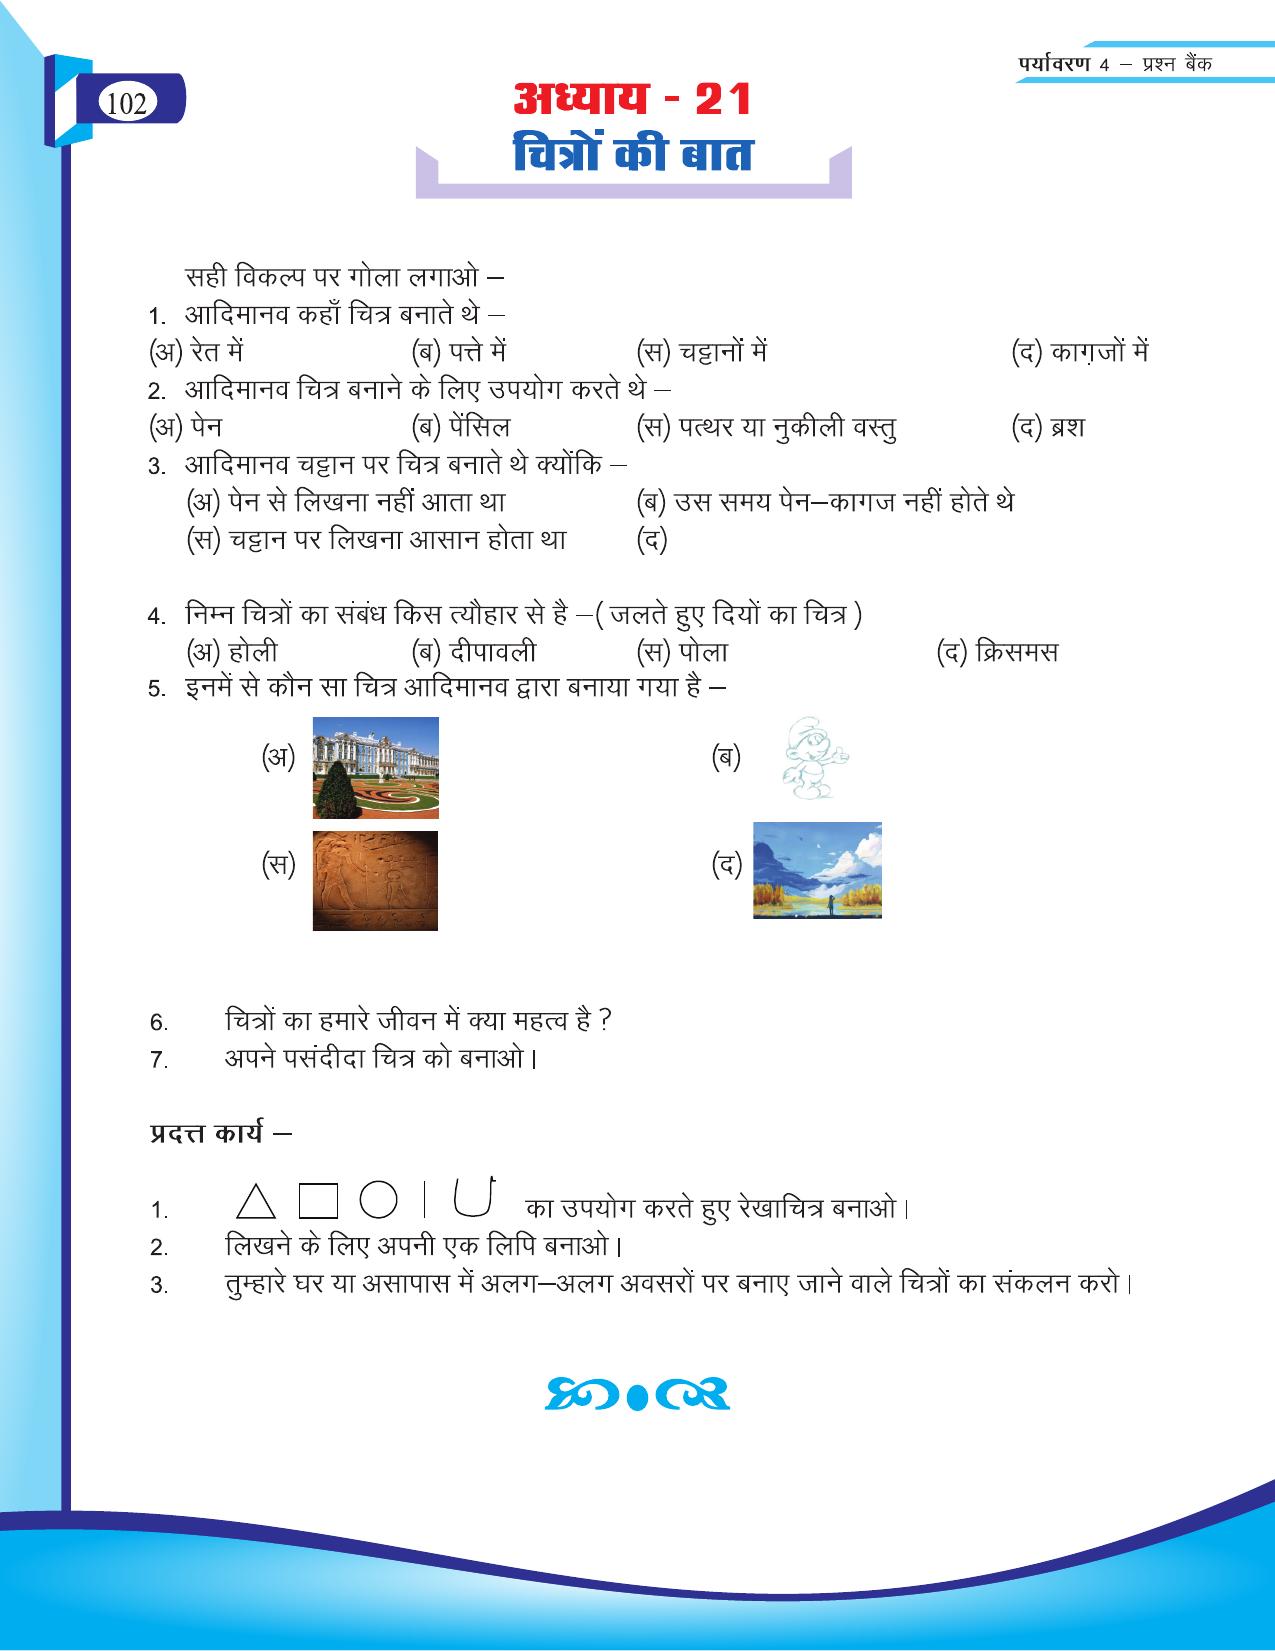 Chhattisgarh Board Class 4 EVS Question Bank 2015-16 - Page 31